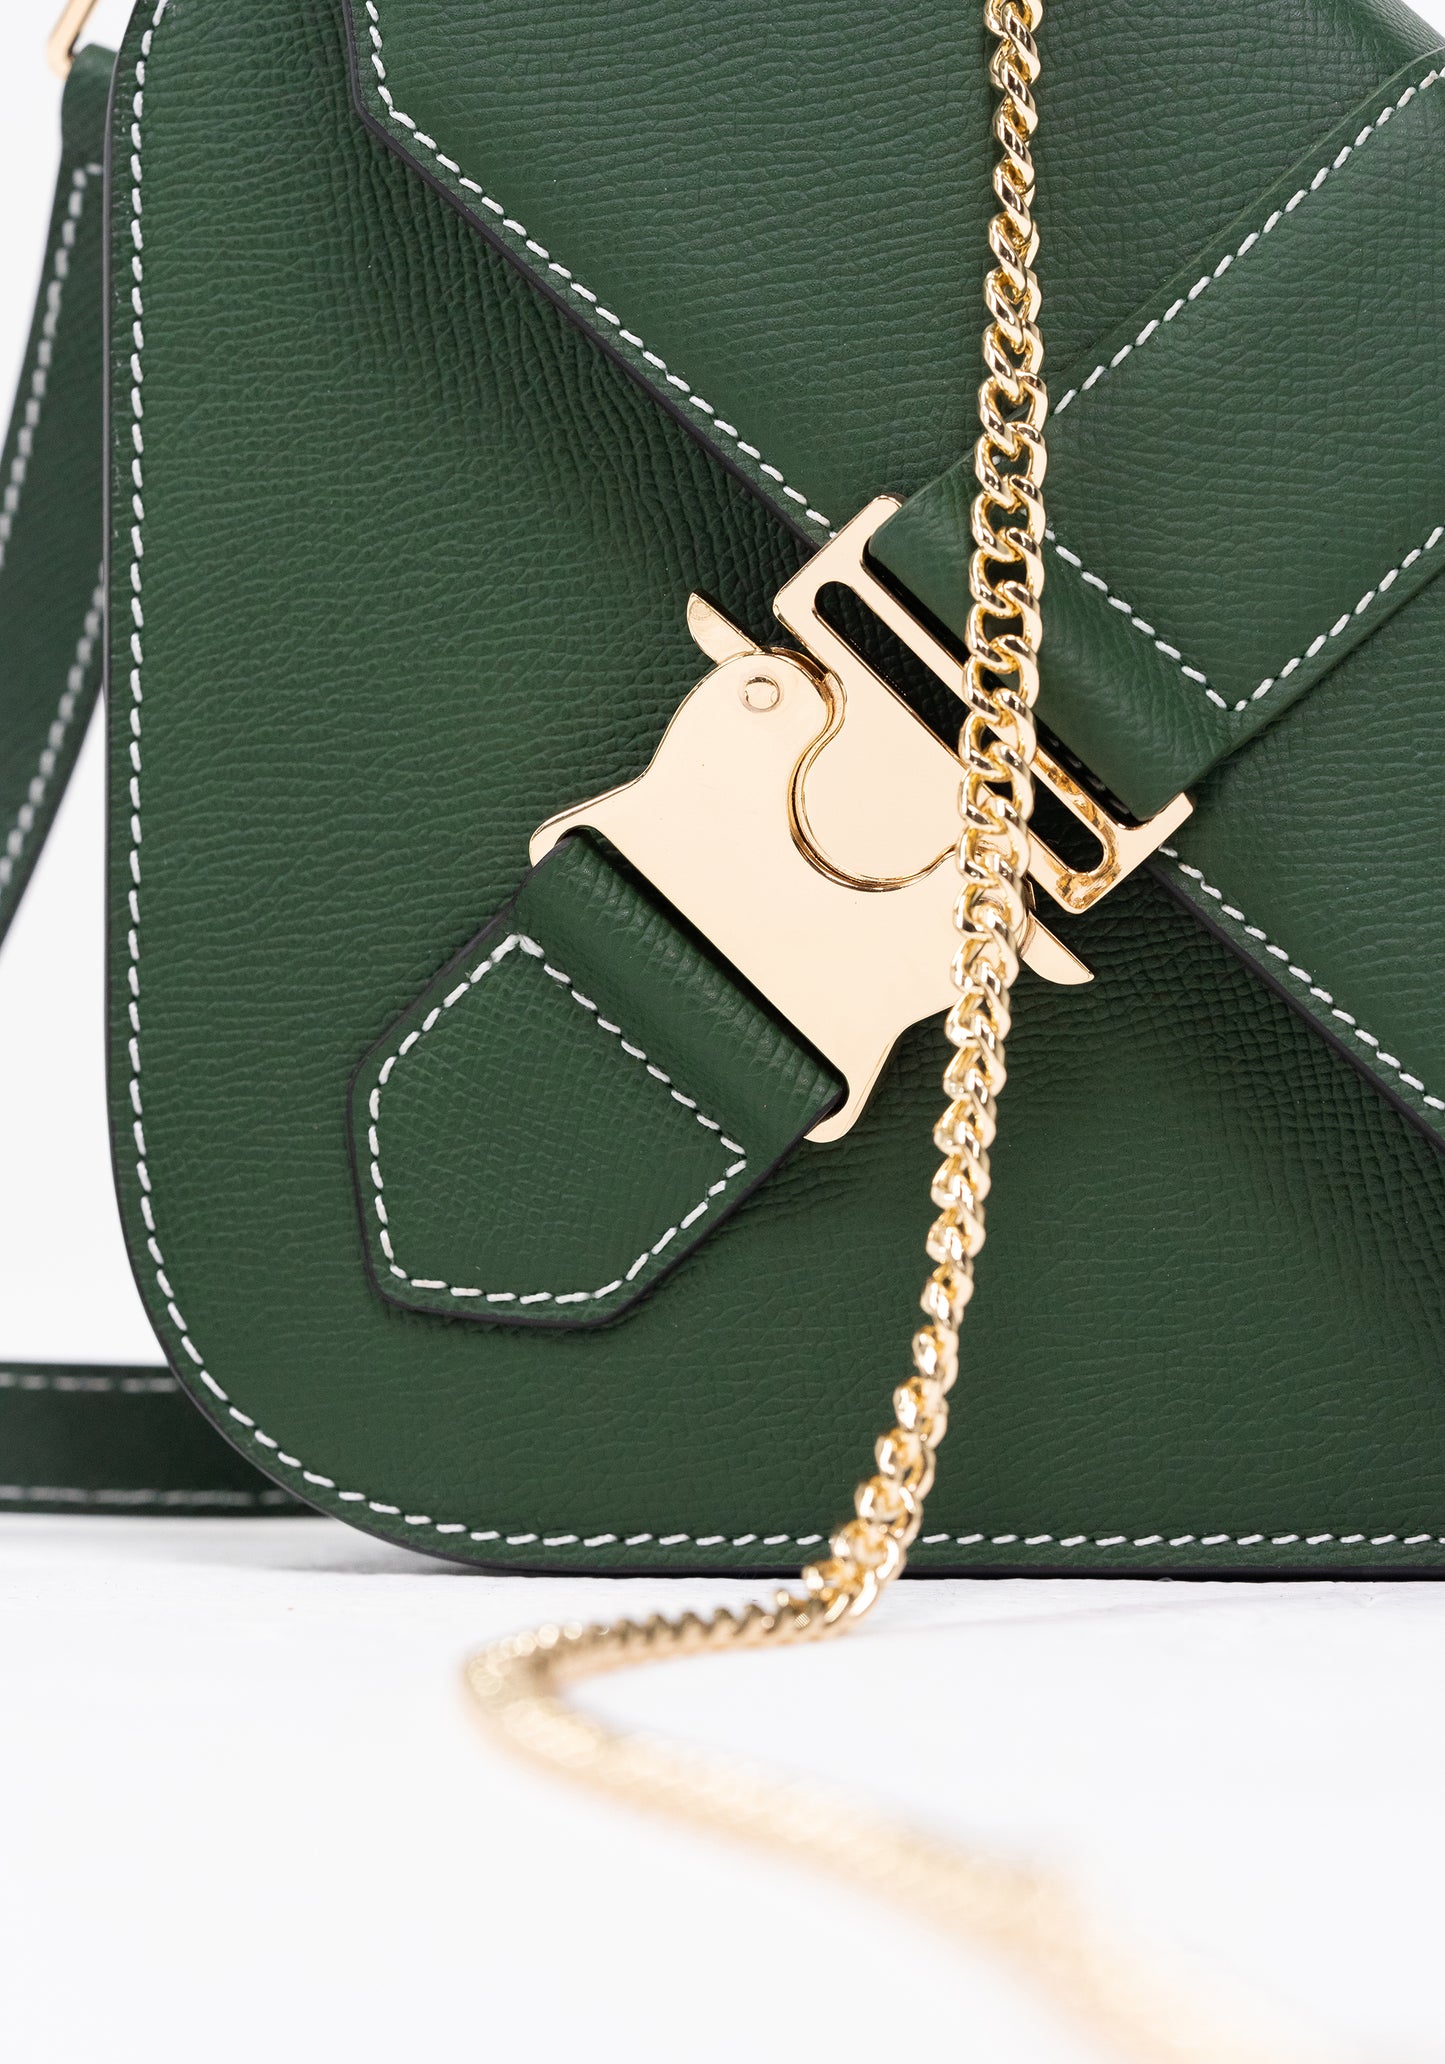 The Regatta Handbag (Green)